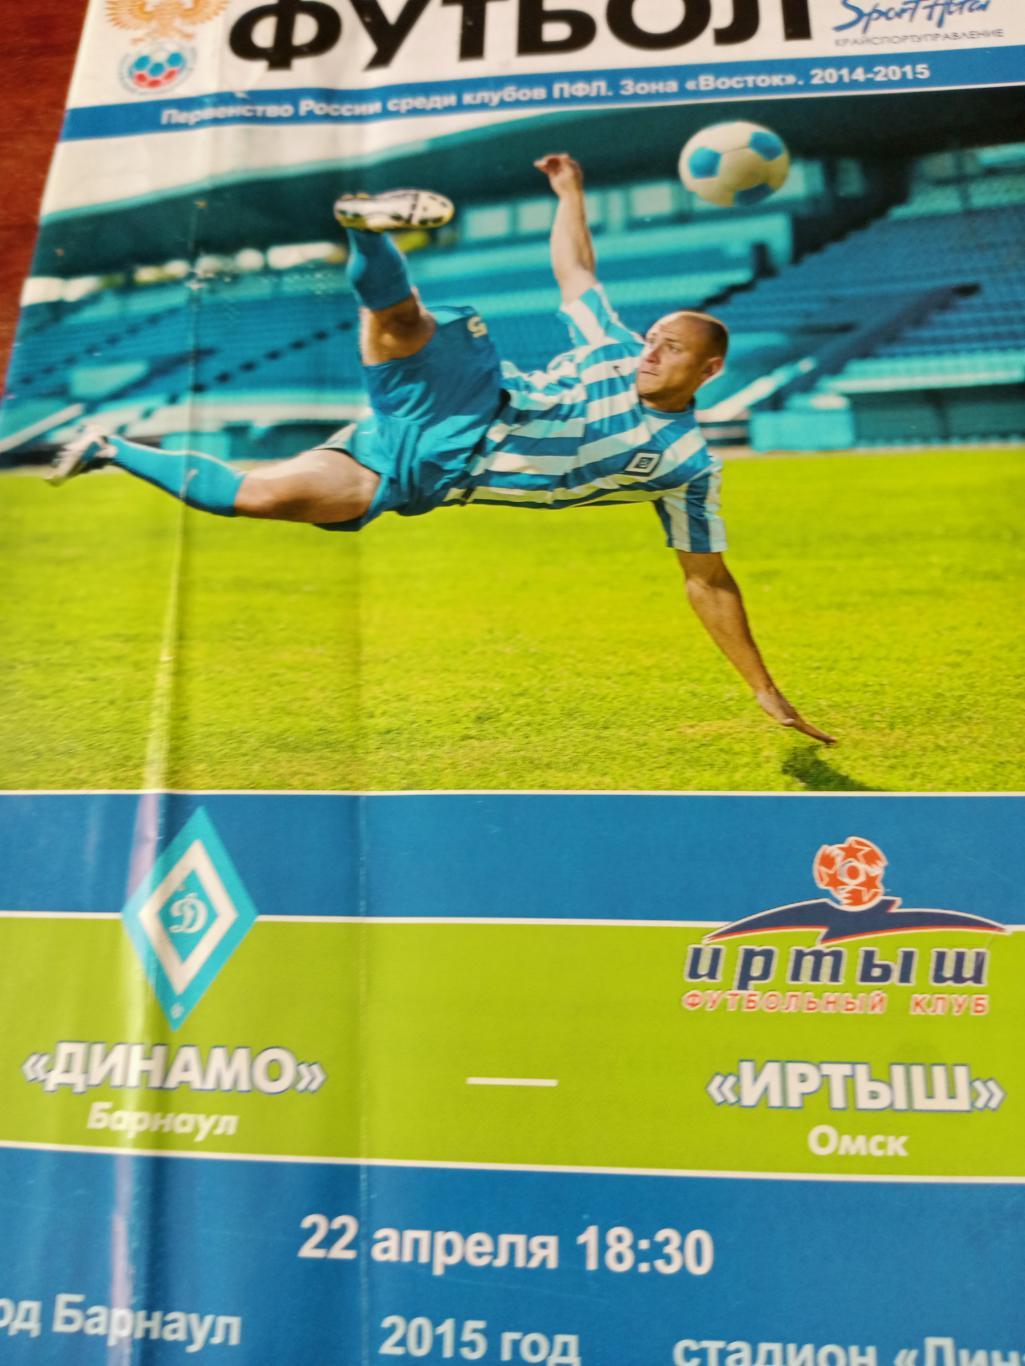 Динамо Барнаул - Иртыш Омск. 22 апреля 2015 год